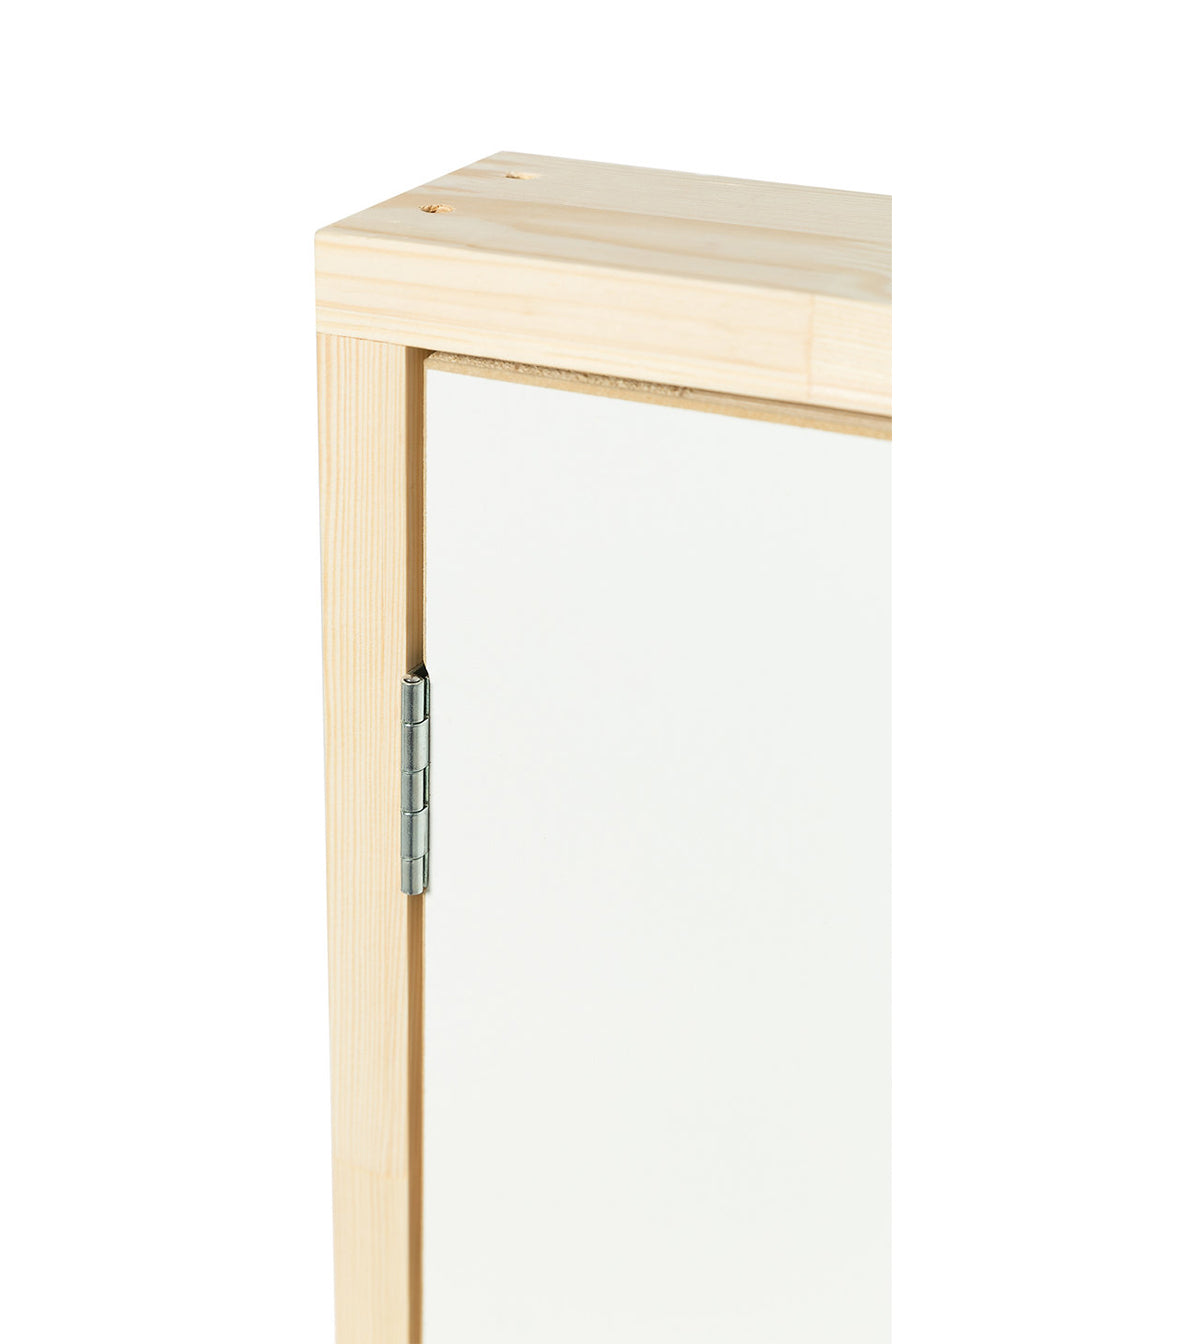 DK TERMO - Panel de puerta de acceso con aislamiento de madera - 43in. x 23.6in.